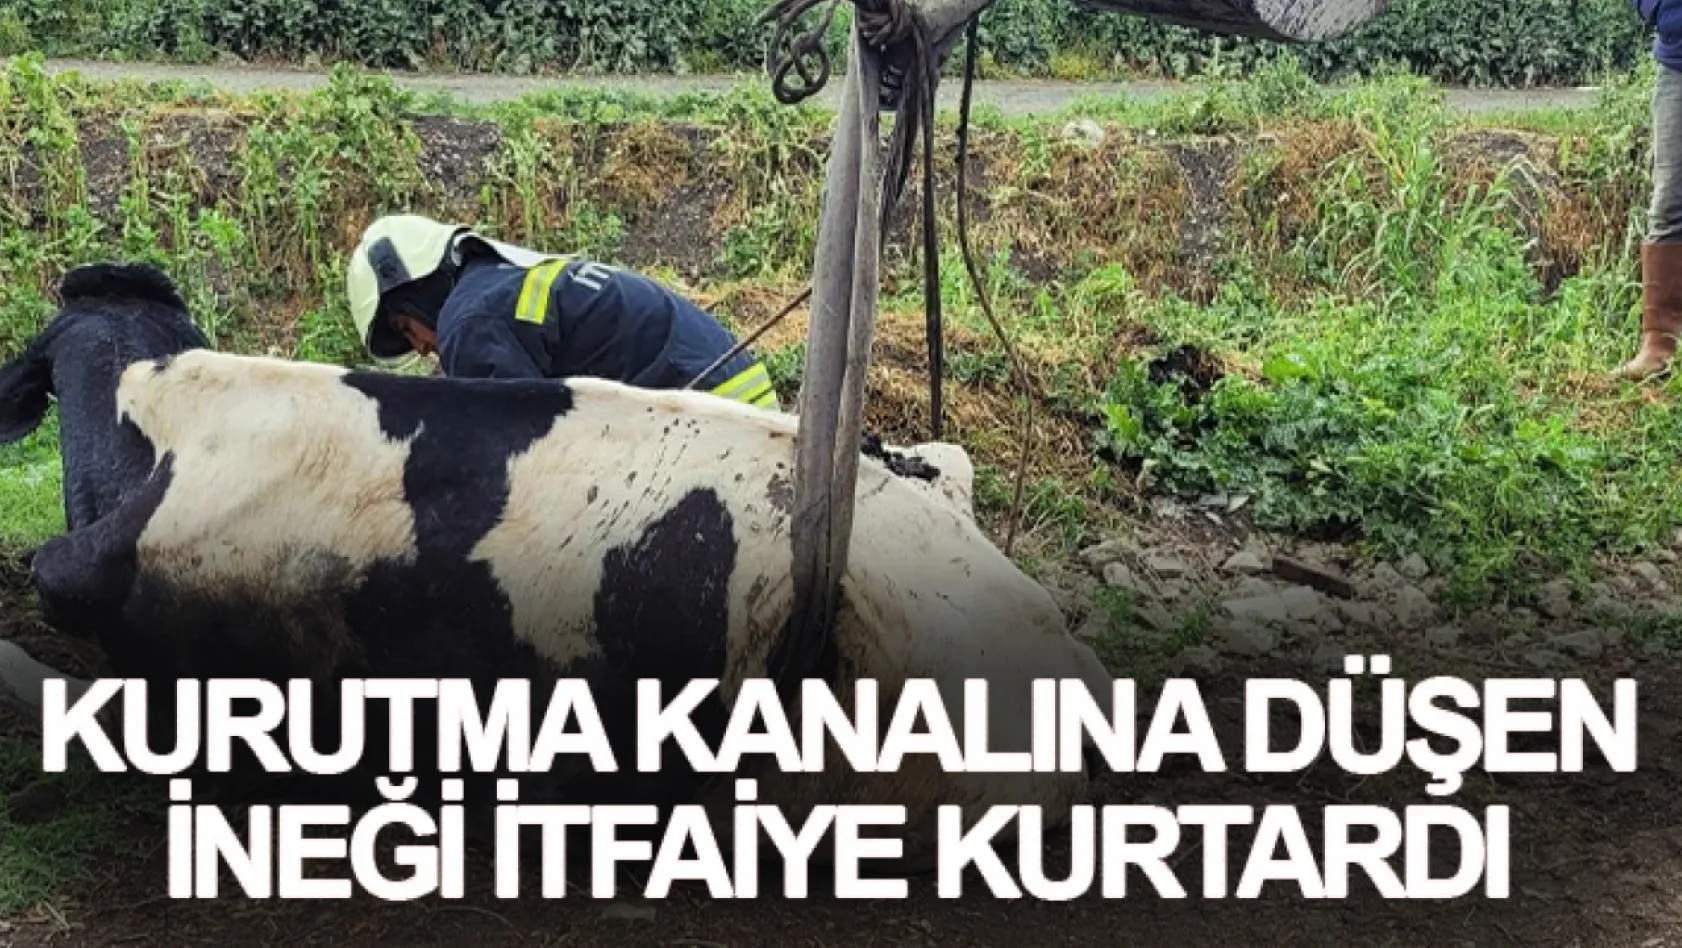 Manisa'da Kurutma kanalına düşen ineği itfaiye kurtardı